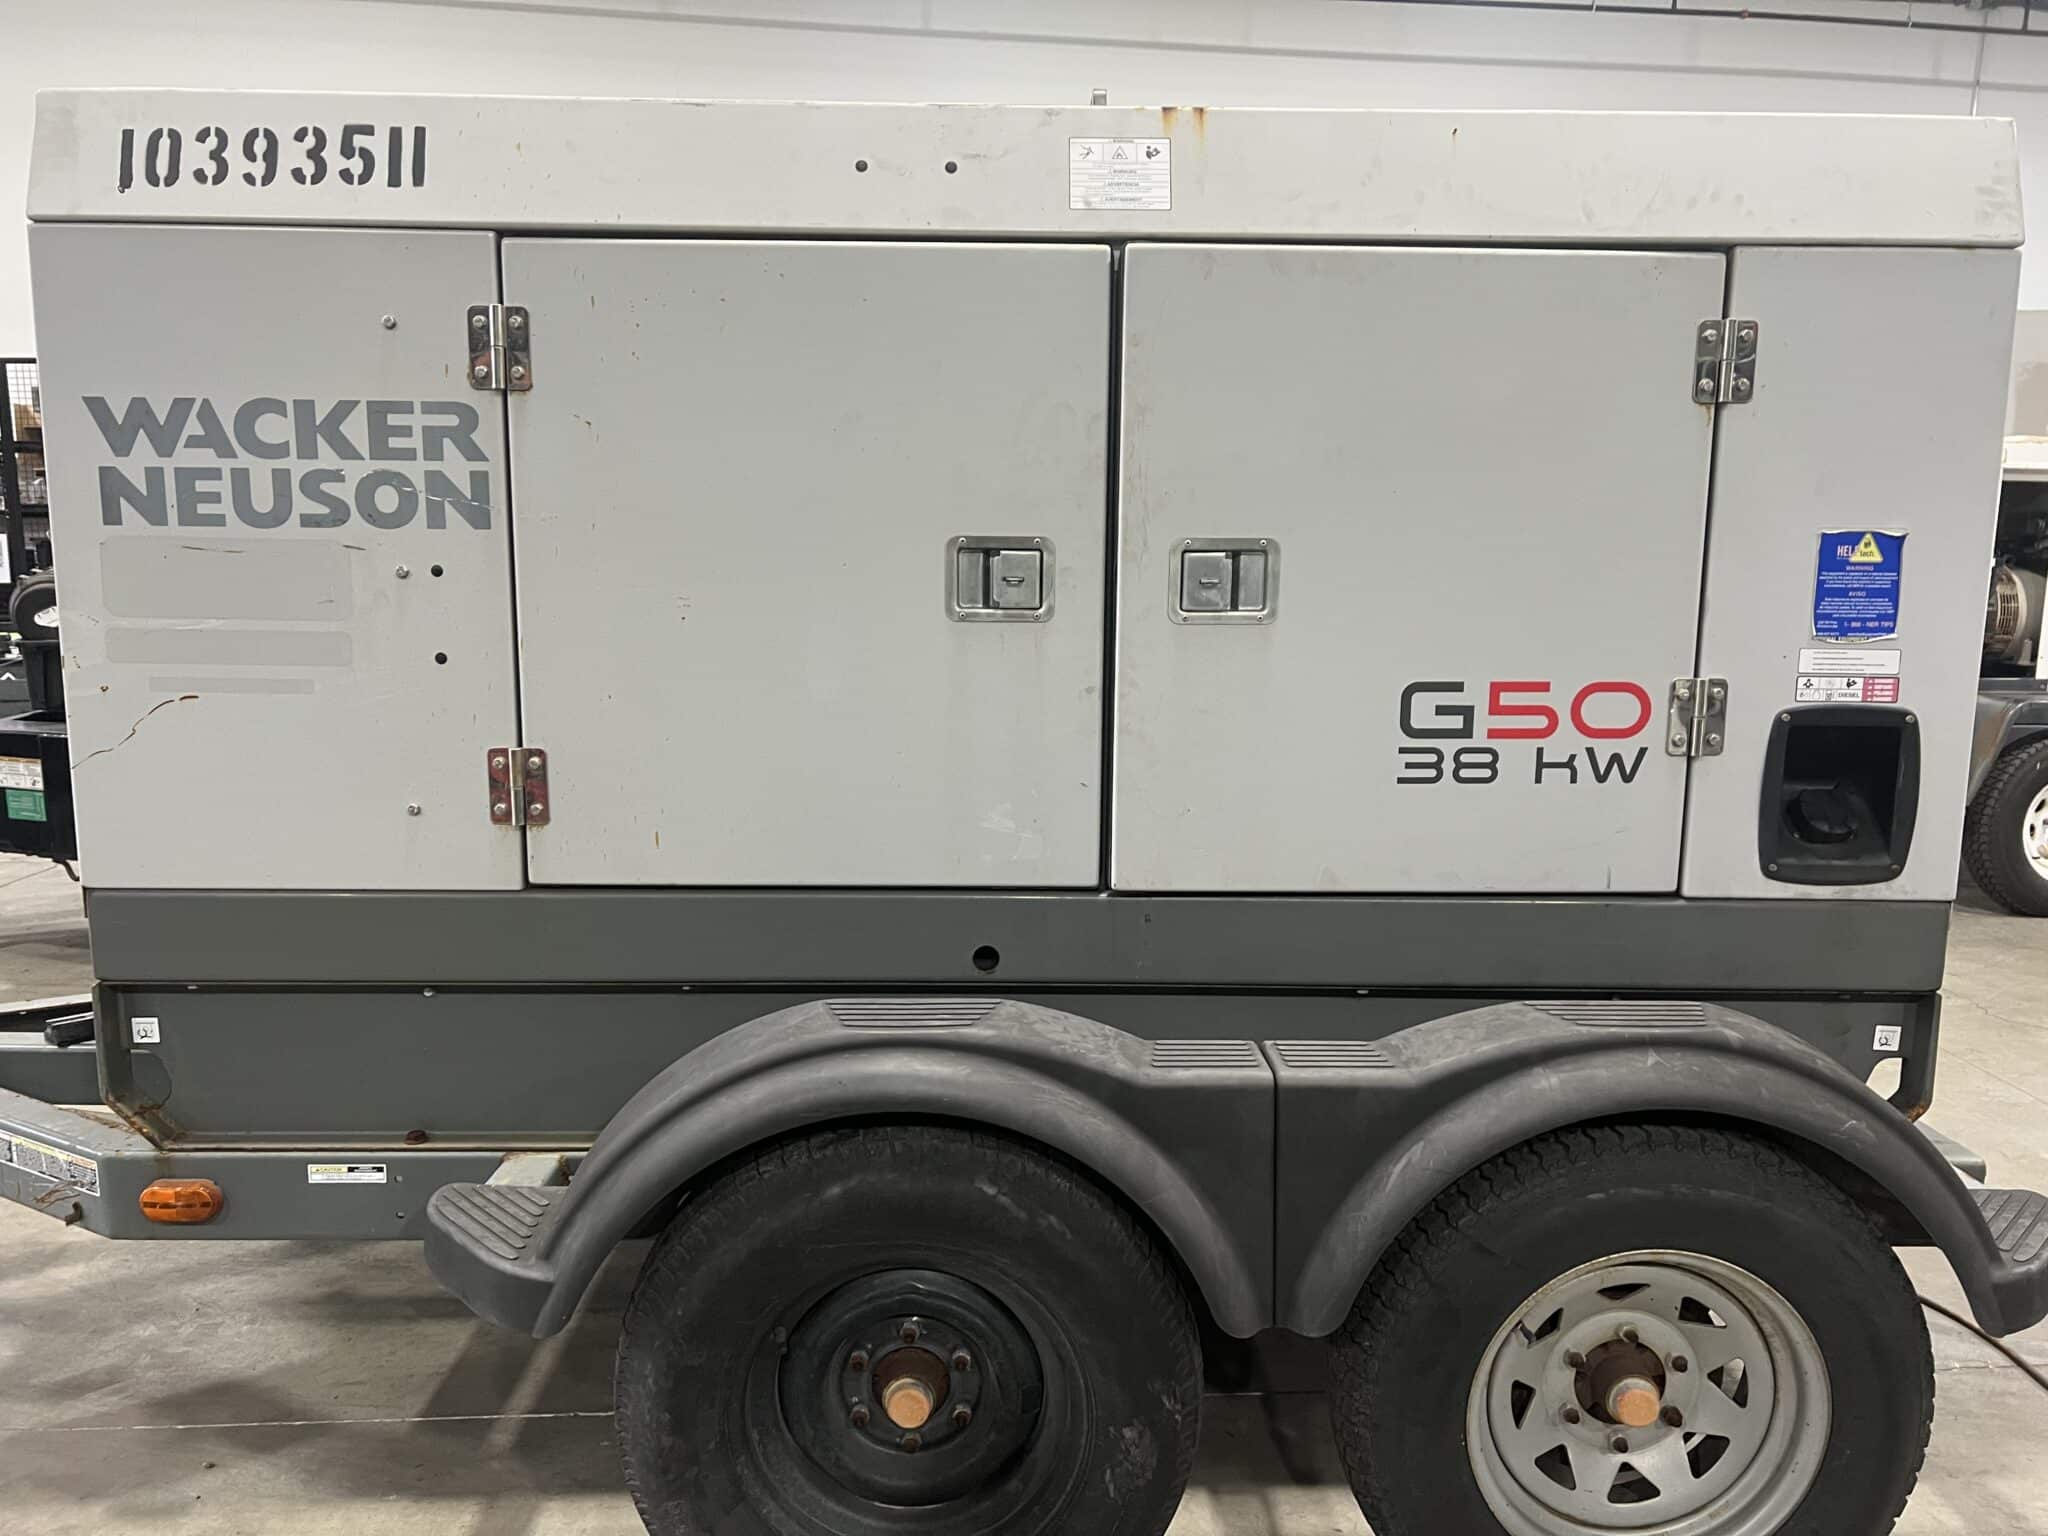 Used 38 kW Wacker Neuson G50 Portable Diesel Generator – EPA Tier 4